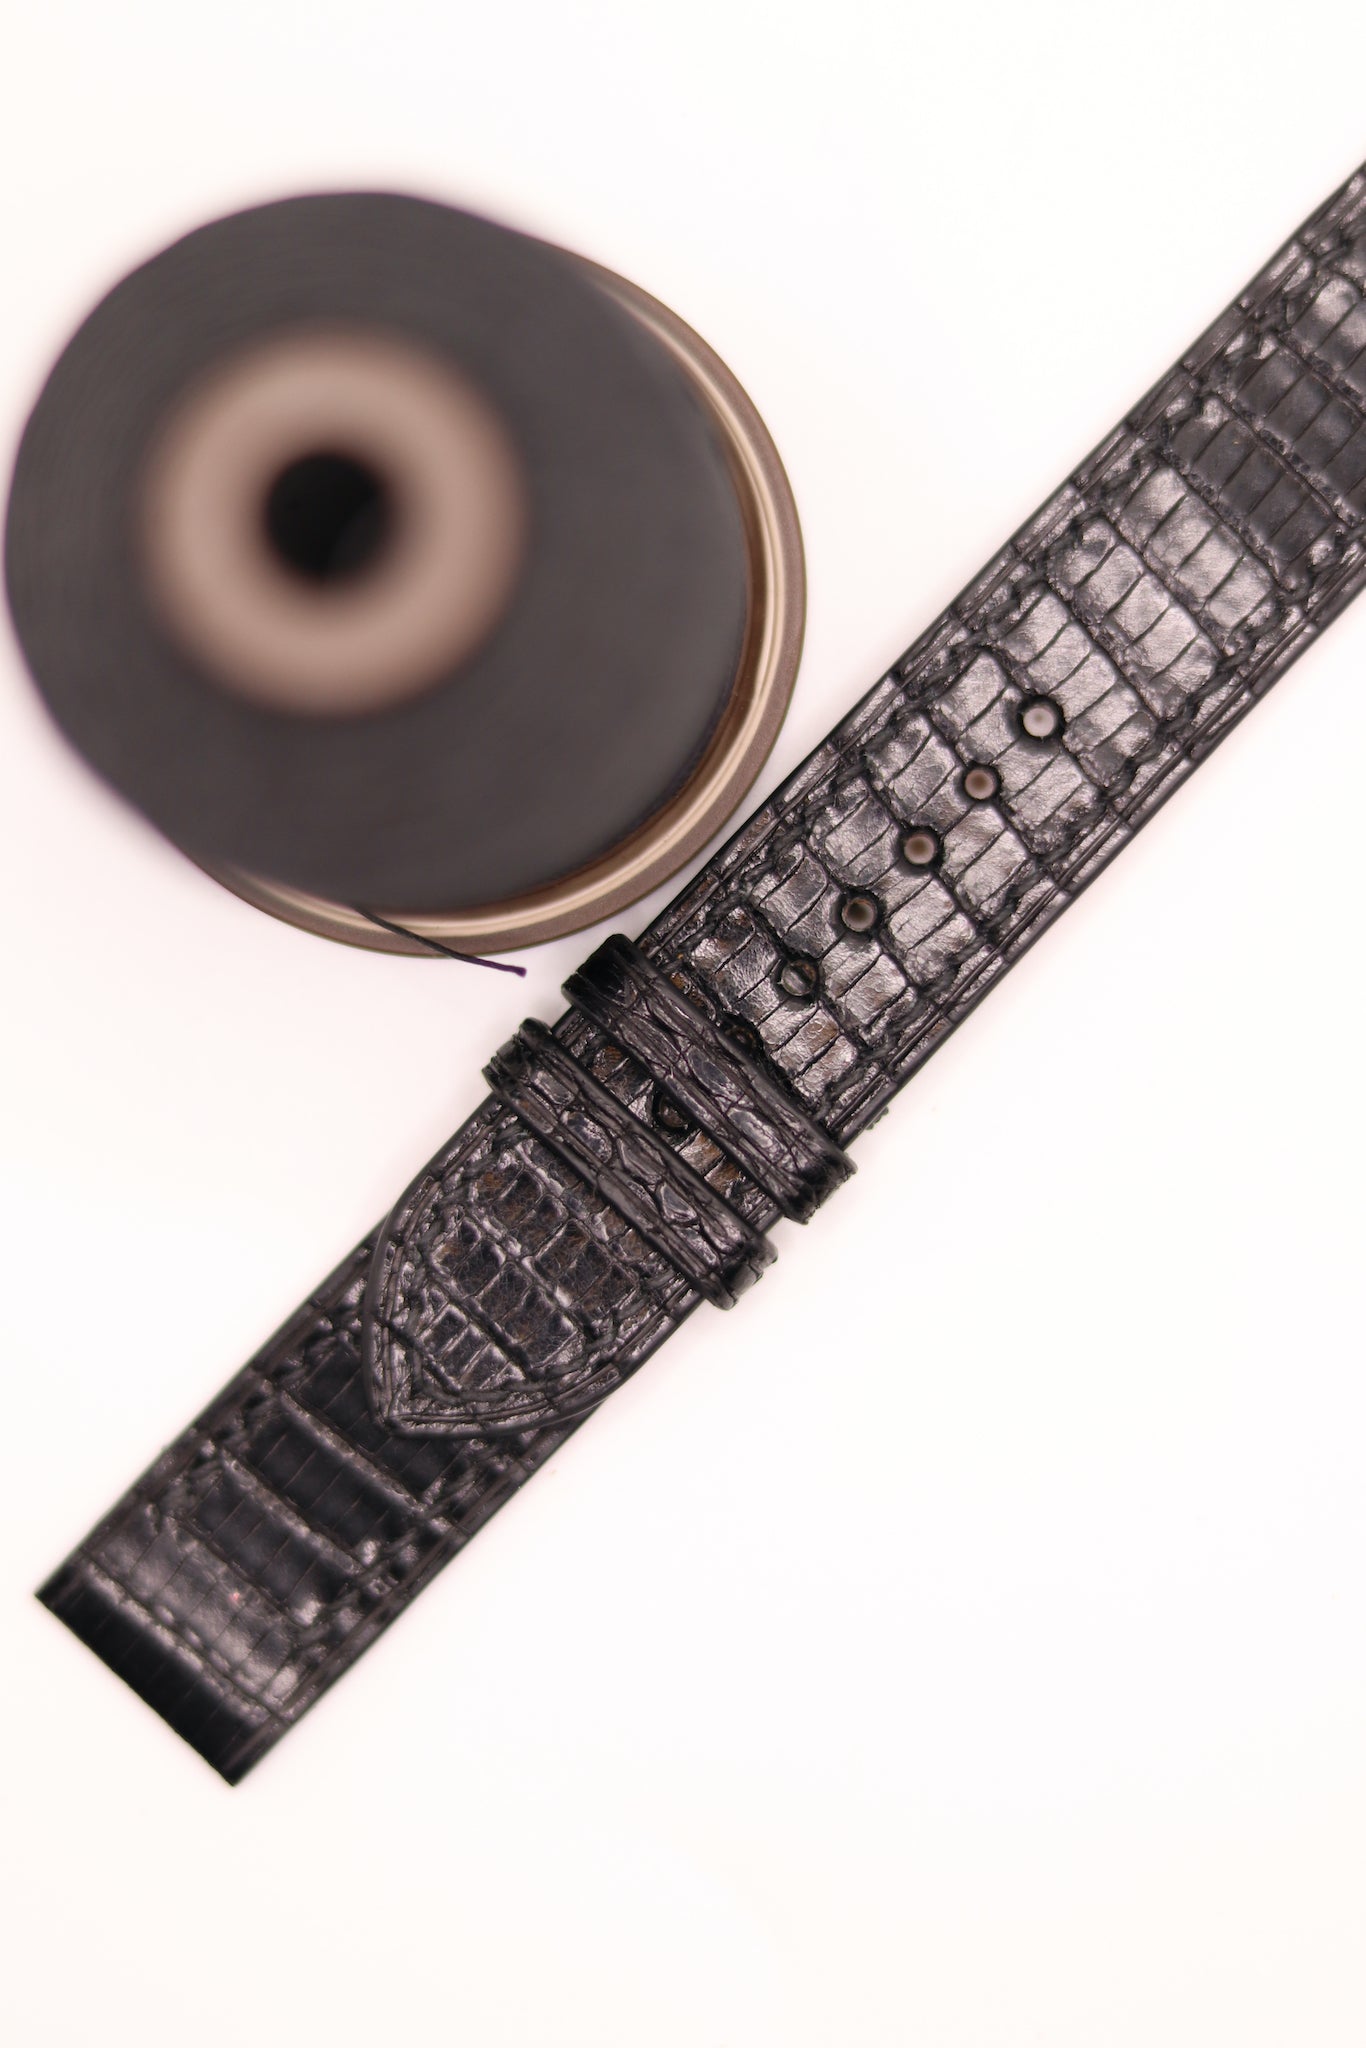 HCP Black Lizard Leather 20mm Bespoke Watch Strap